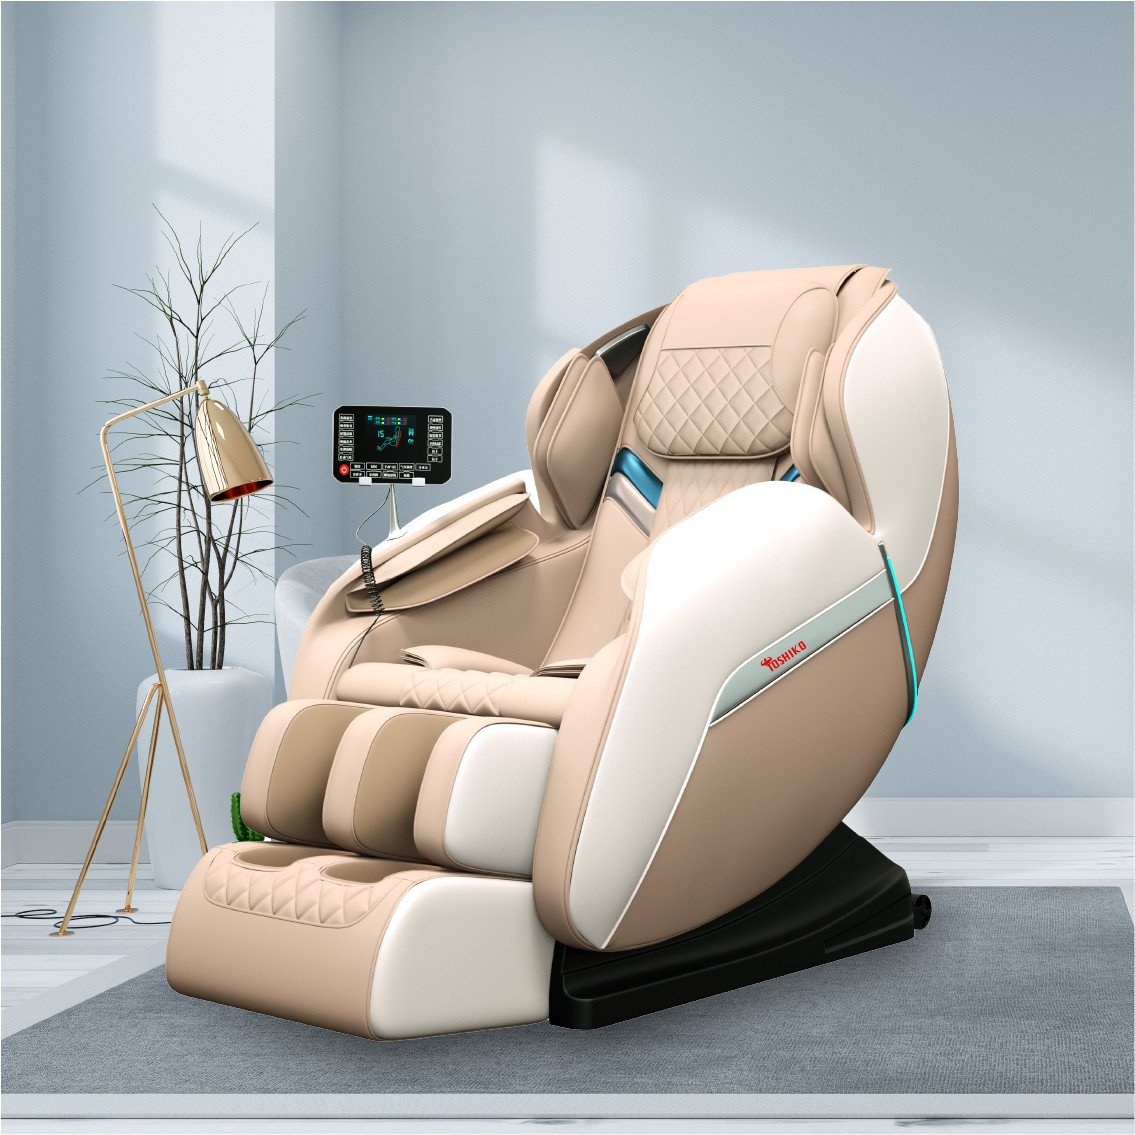 Ghế massage Toshiko T21 PRO - Bảo hành 6 năm - Giảm giá 40%